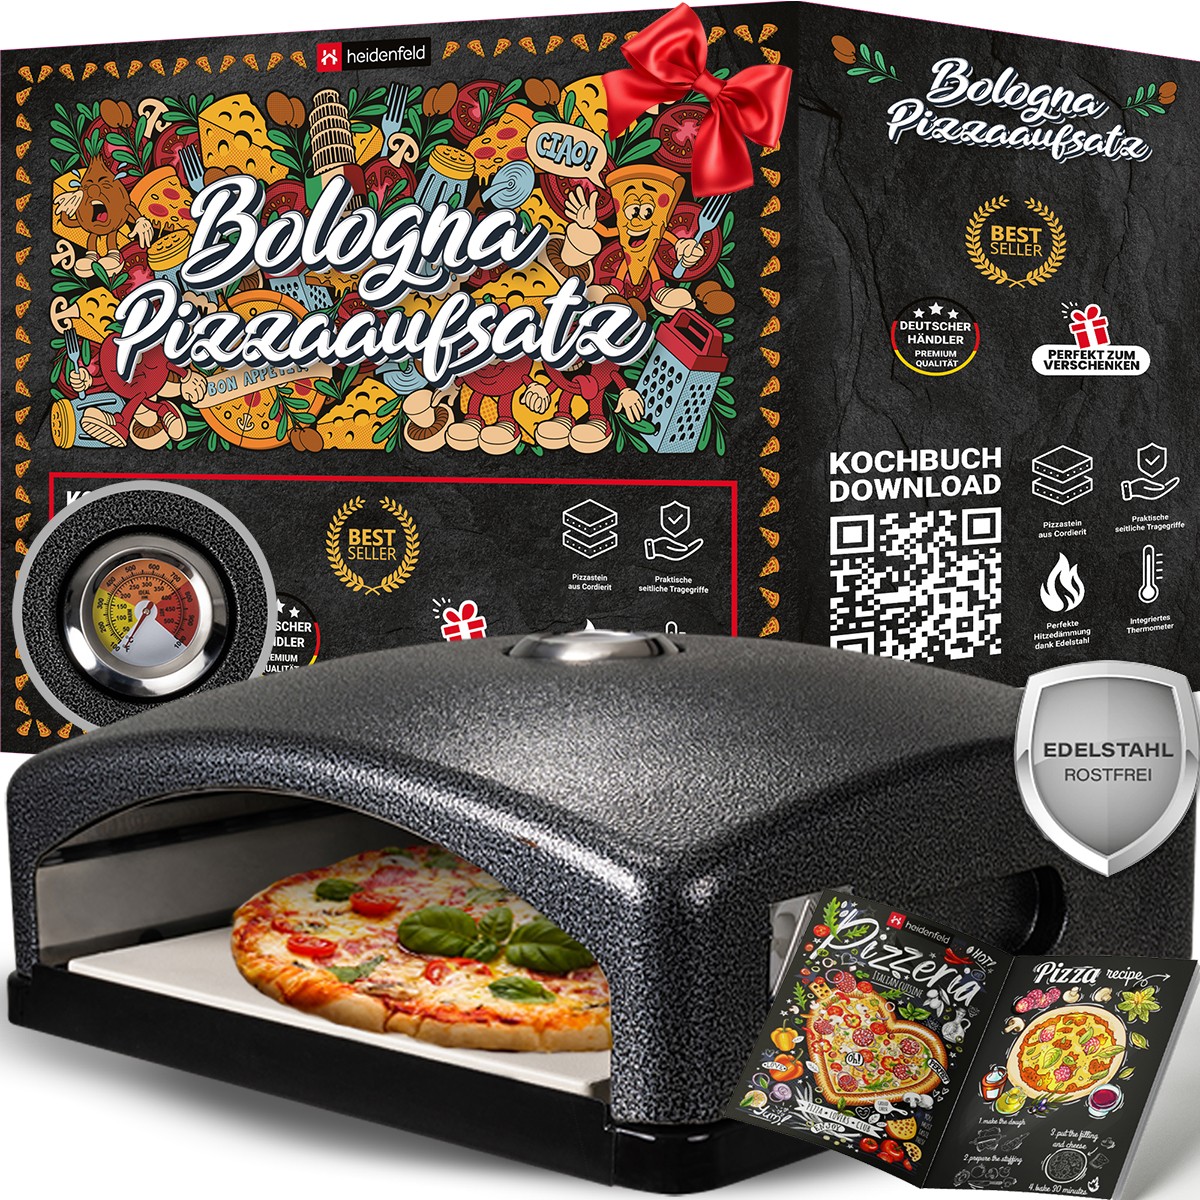 01-pizzaofen-schwarz-heidenfeld-pizzaaufsatz-thermometer-pizzastein-bologna-startbild